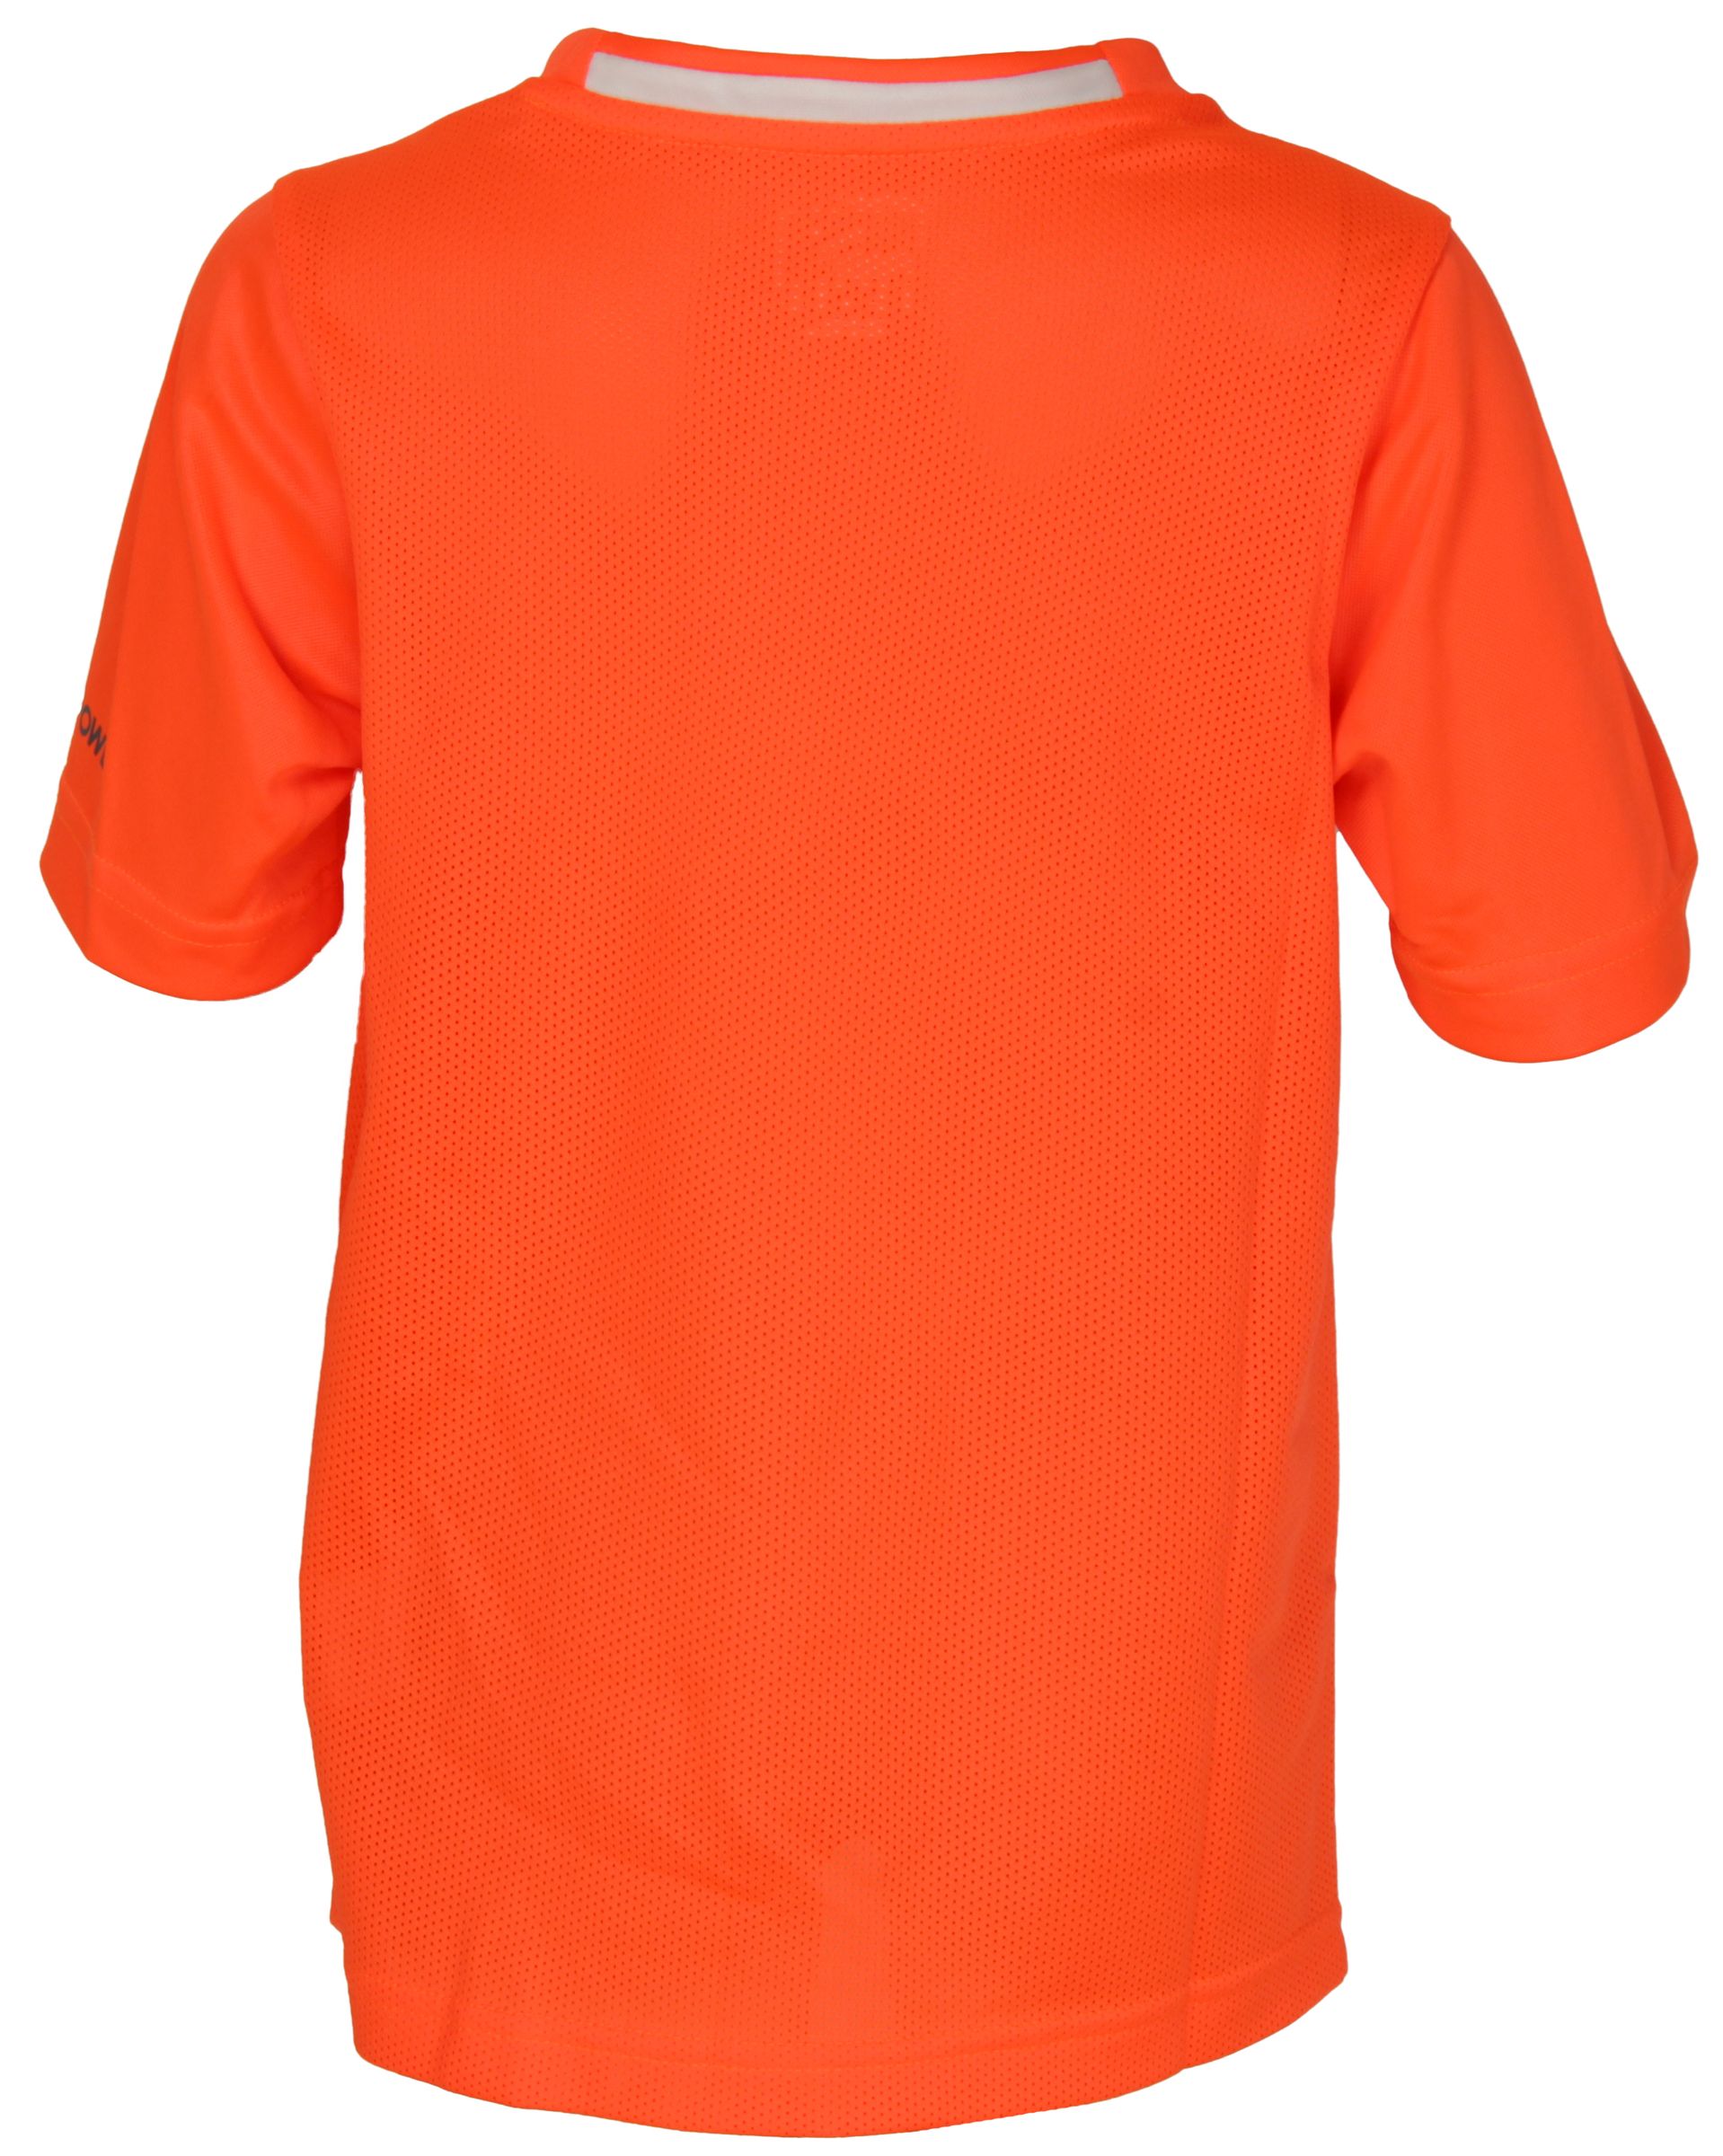 PUMA IT evoPower Graphic Tee Shirt T-Shirt DryCELL Herren neon 653999